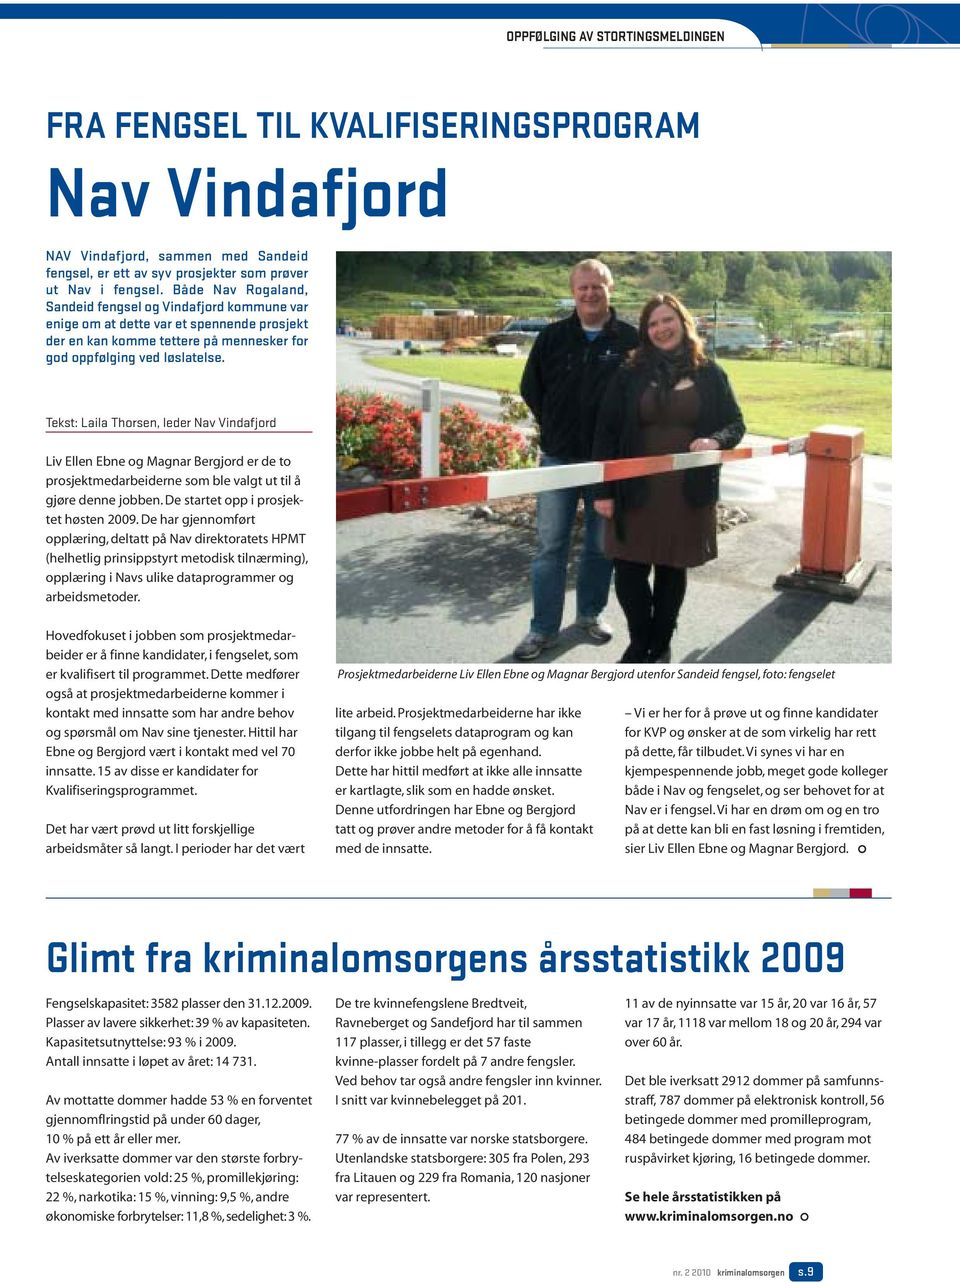 Tekst: Laila Thorsen, leder Nav Vindafjord Liv Ellen Ebne og Magnar Bergjord er de to prosjektmedarbeiderne som ble valgt ut til å gjøre denne jobben. De startet opp i prosjektet høsten 2009.